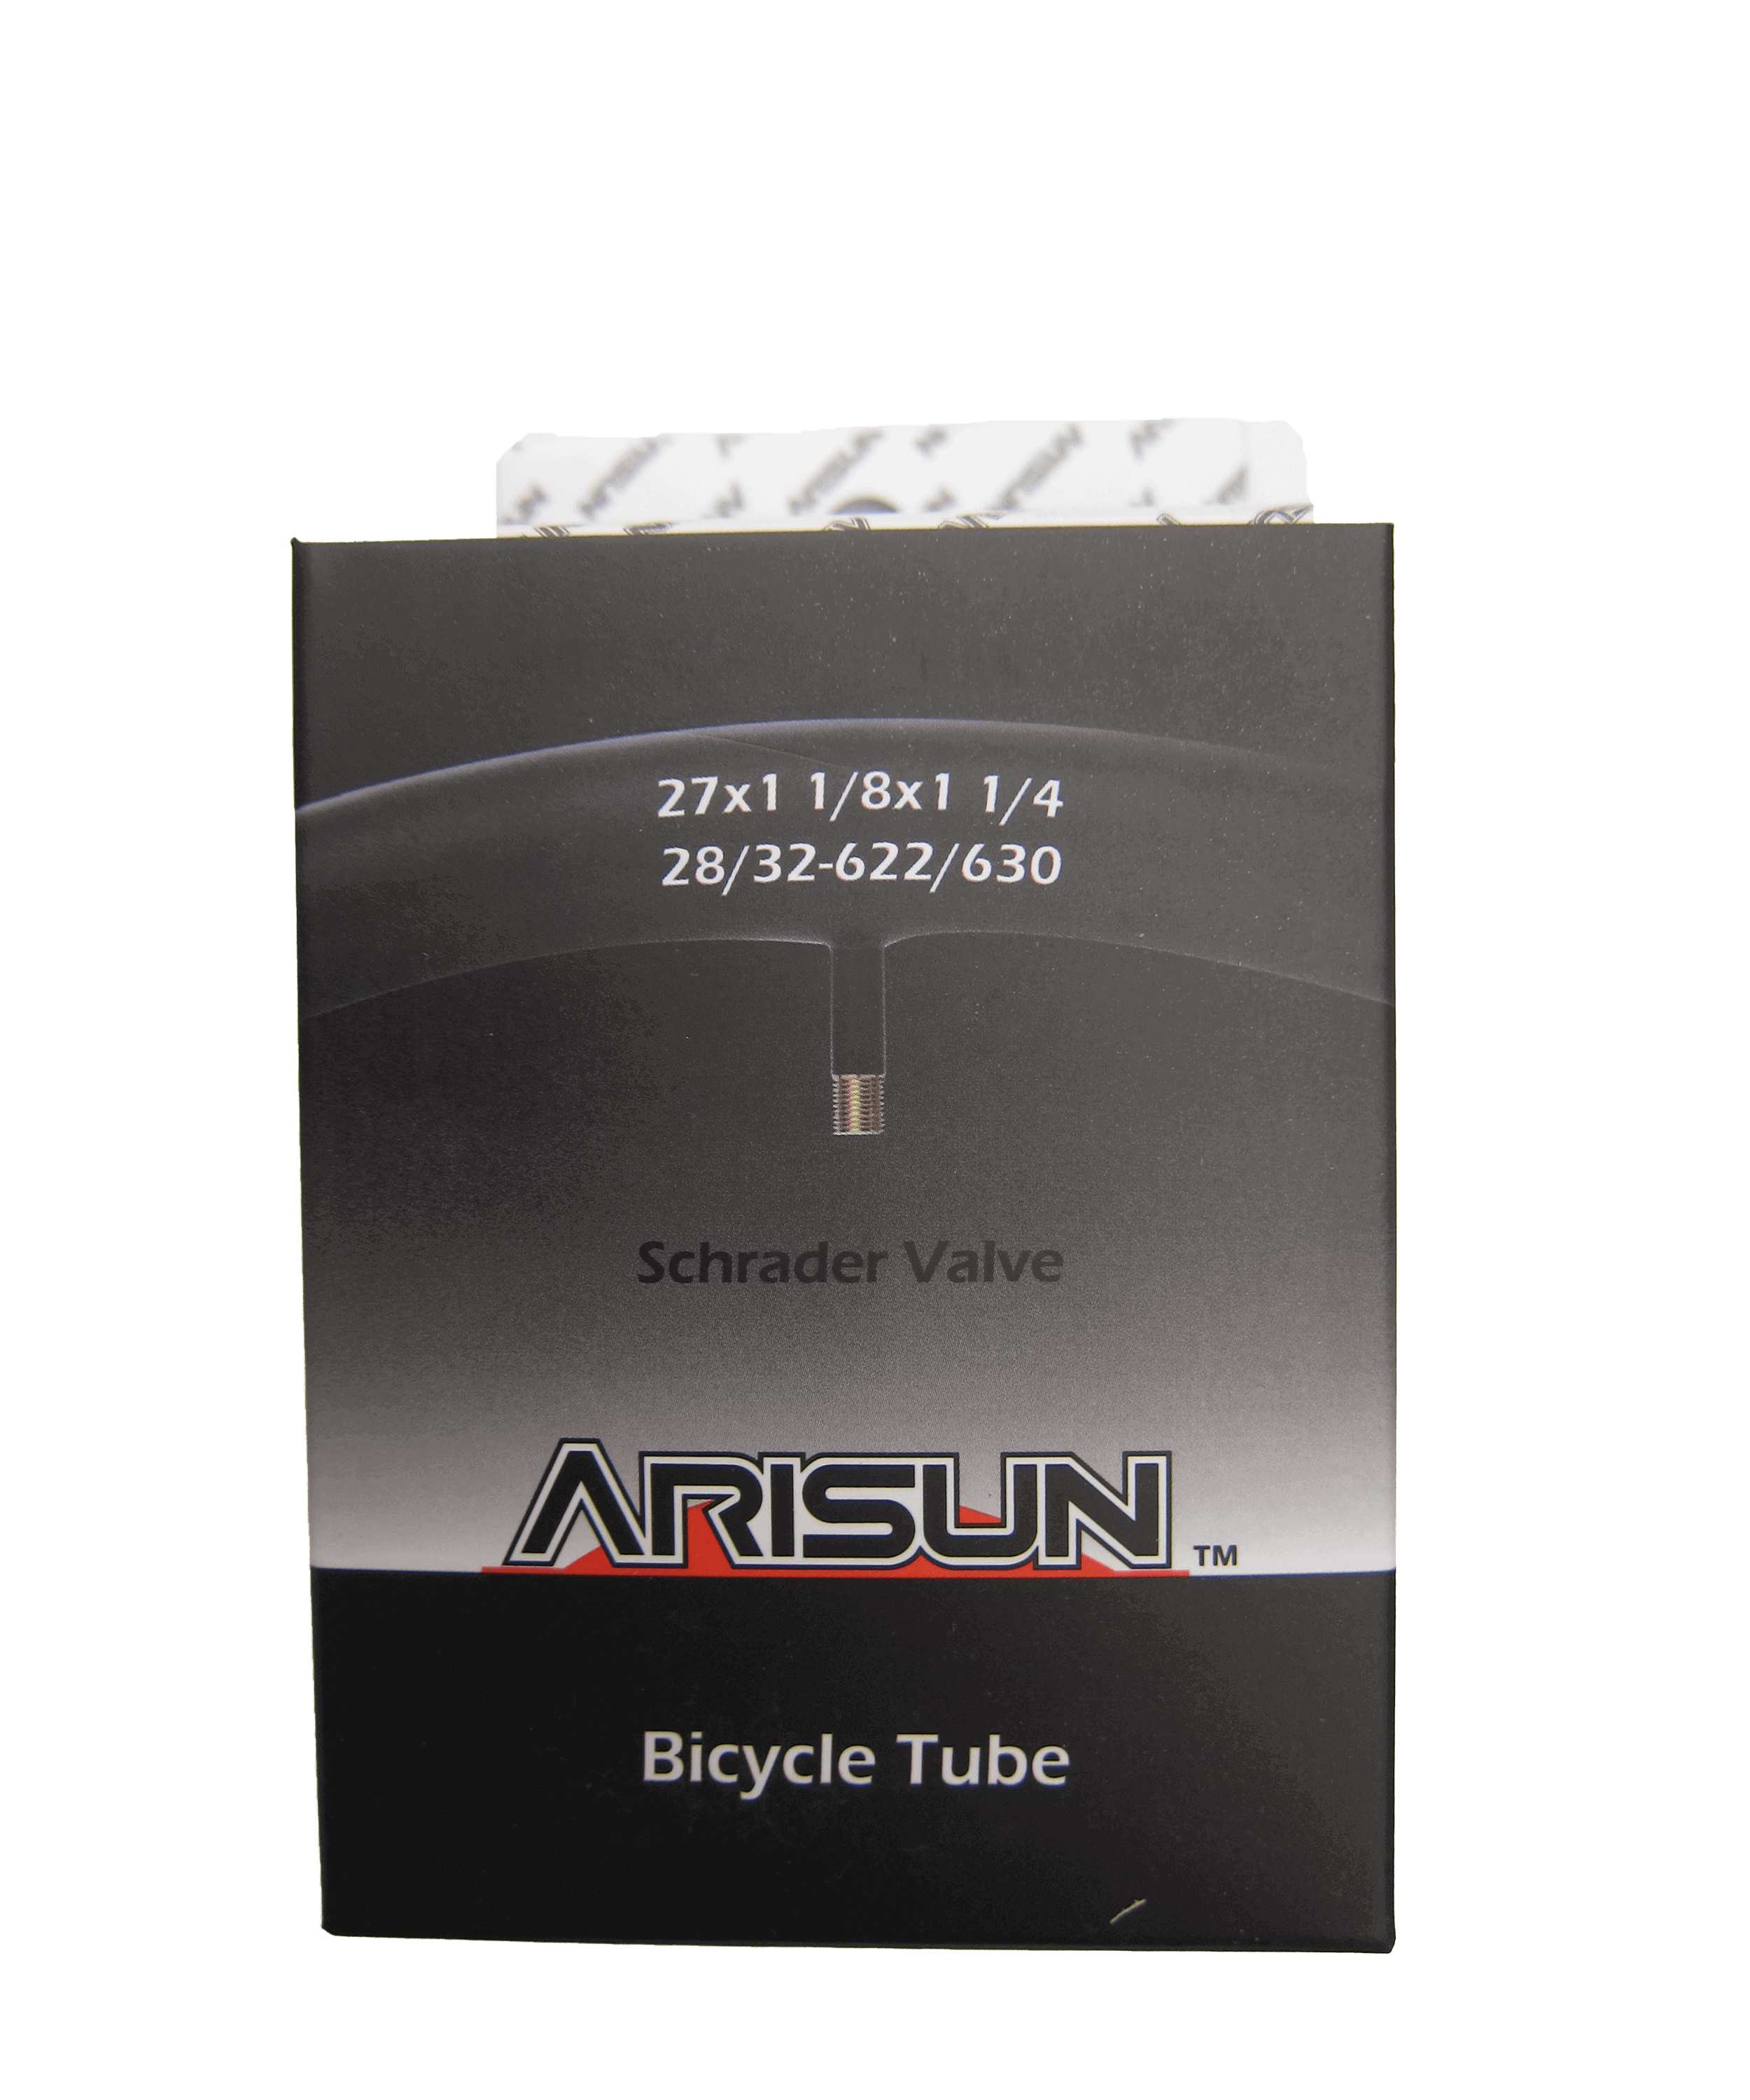 ARISUN 27x1-1/8-1-1/4内胎